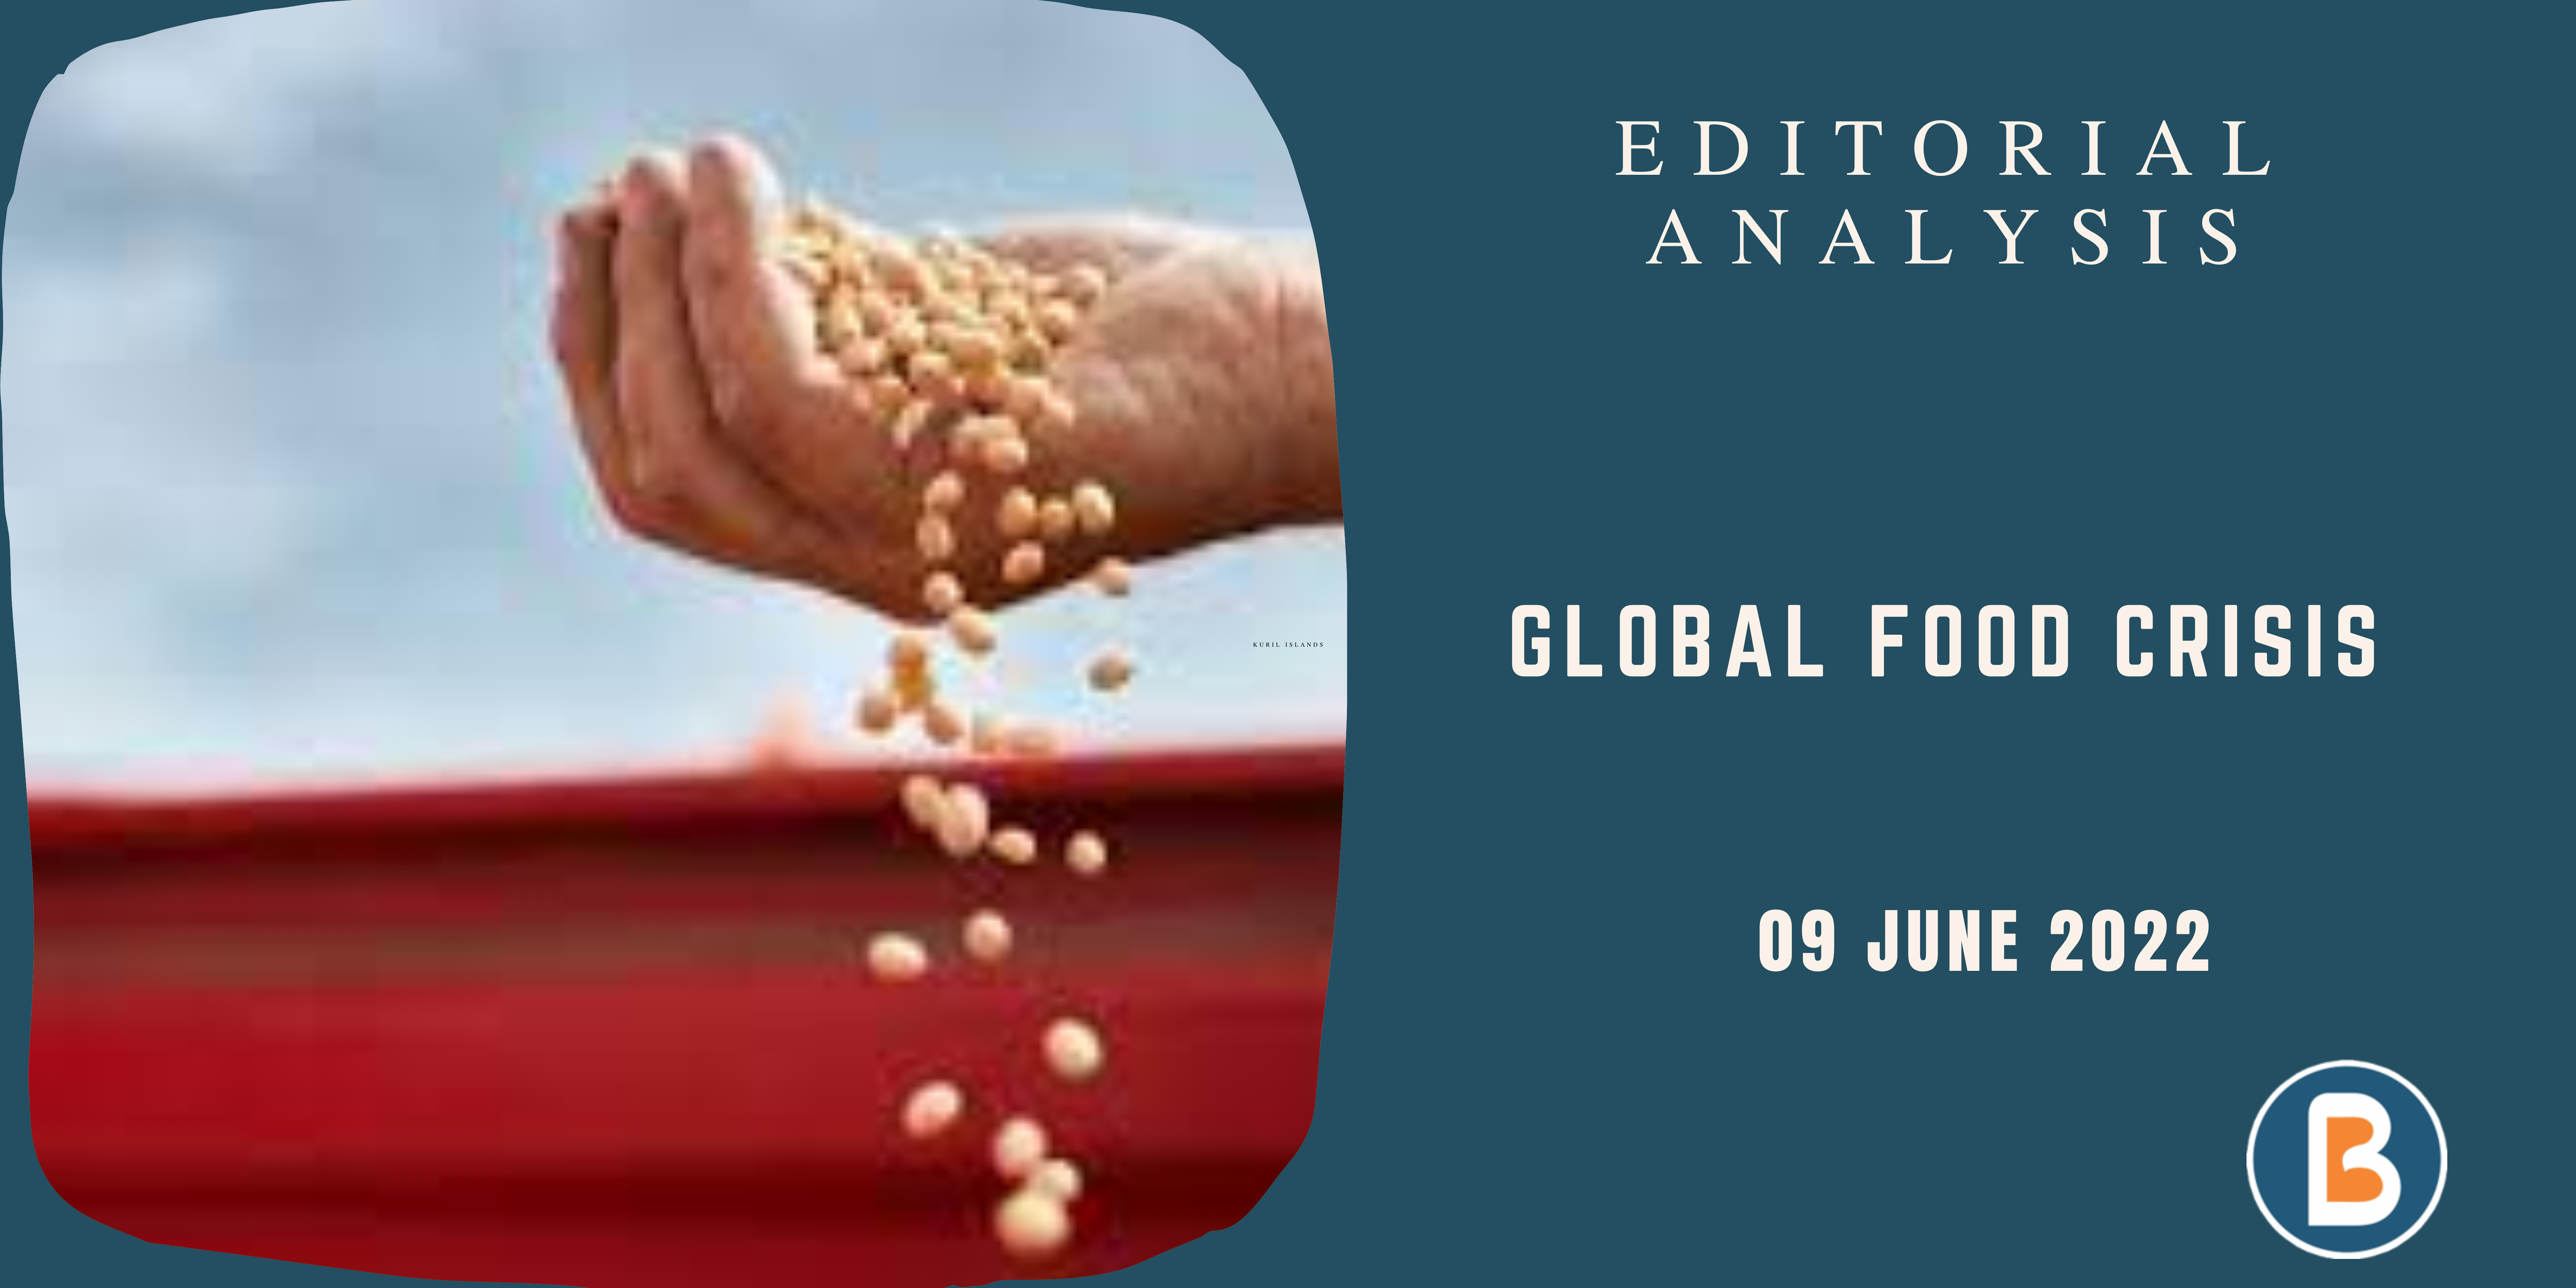 Editorial Analysis for IAS - Global Food Crisis